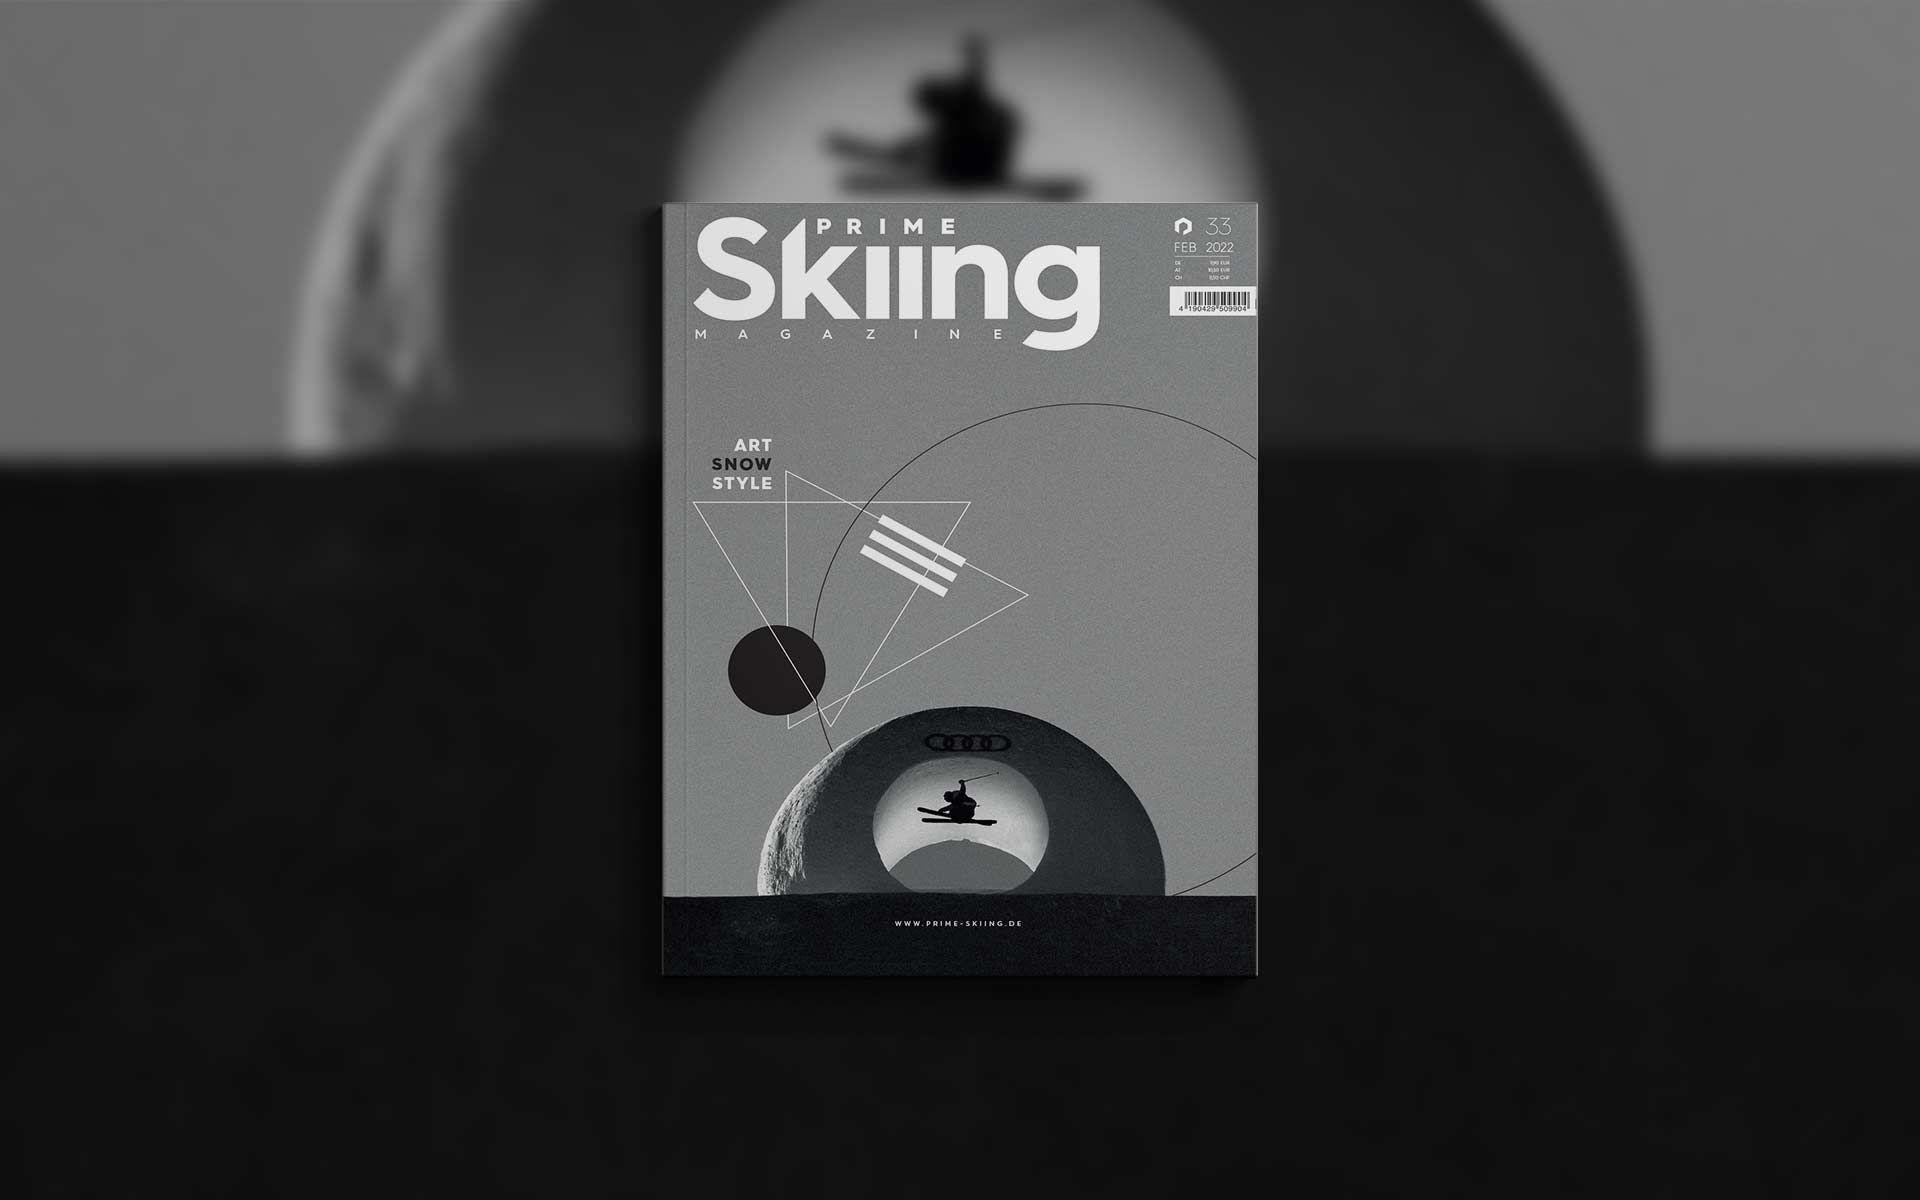 Die neue PRIME Skiing Printausgabe #33 ist demnächst verfügbar - Die Highlights des neuen Mags in der Übersicht!